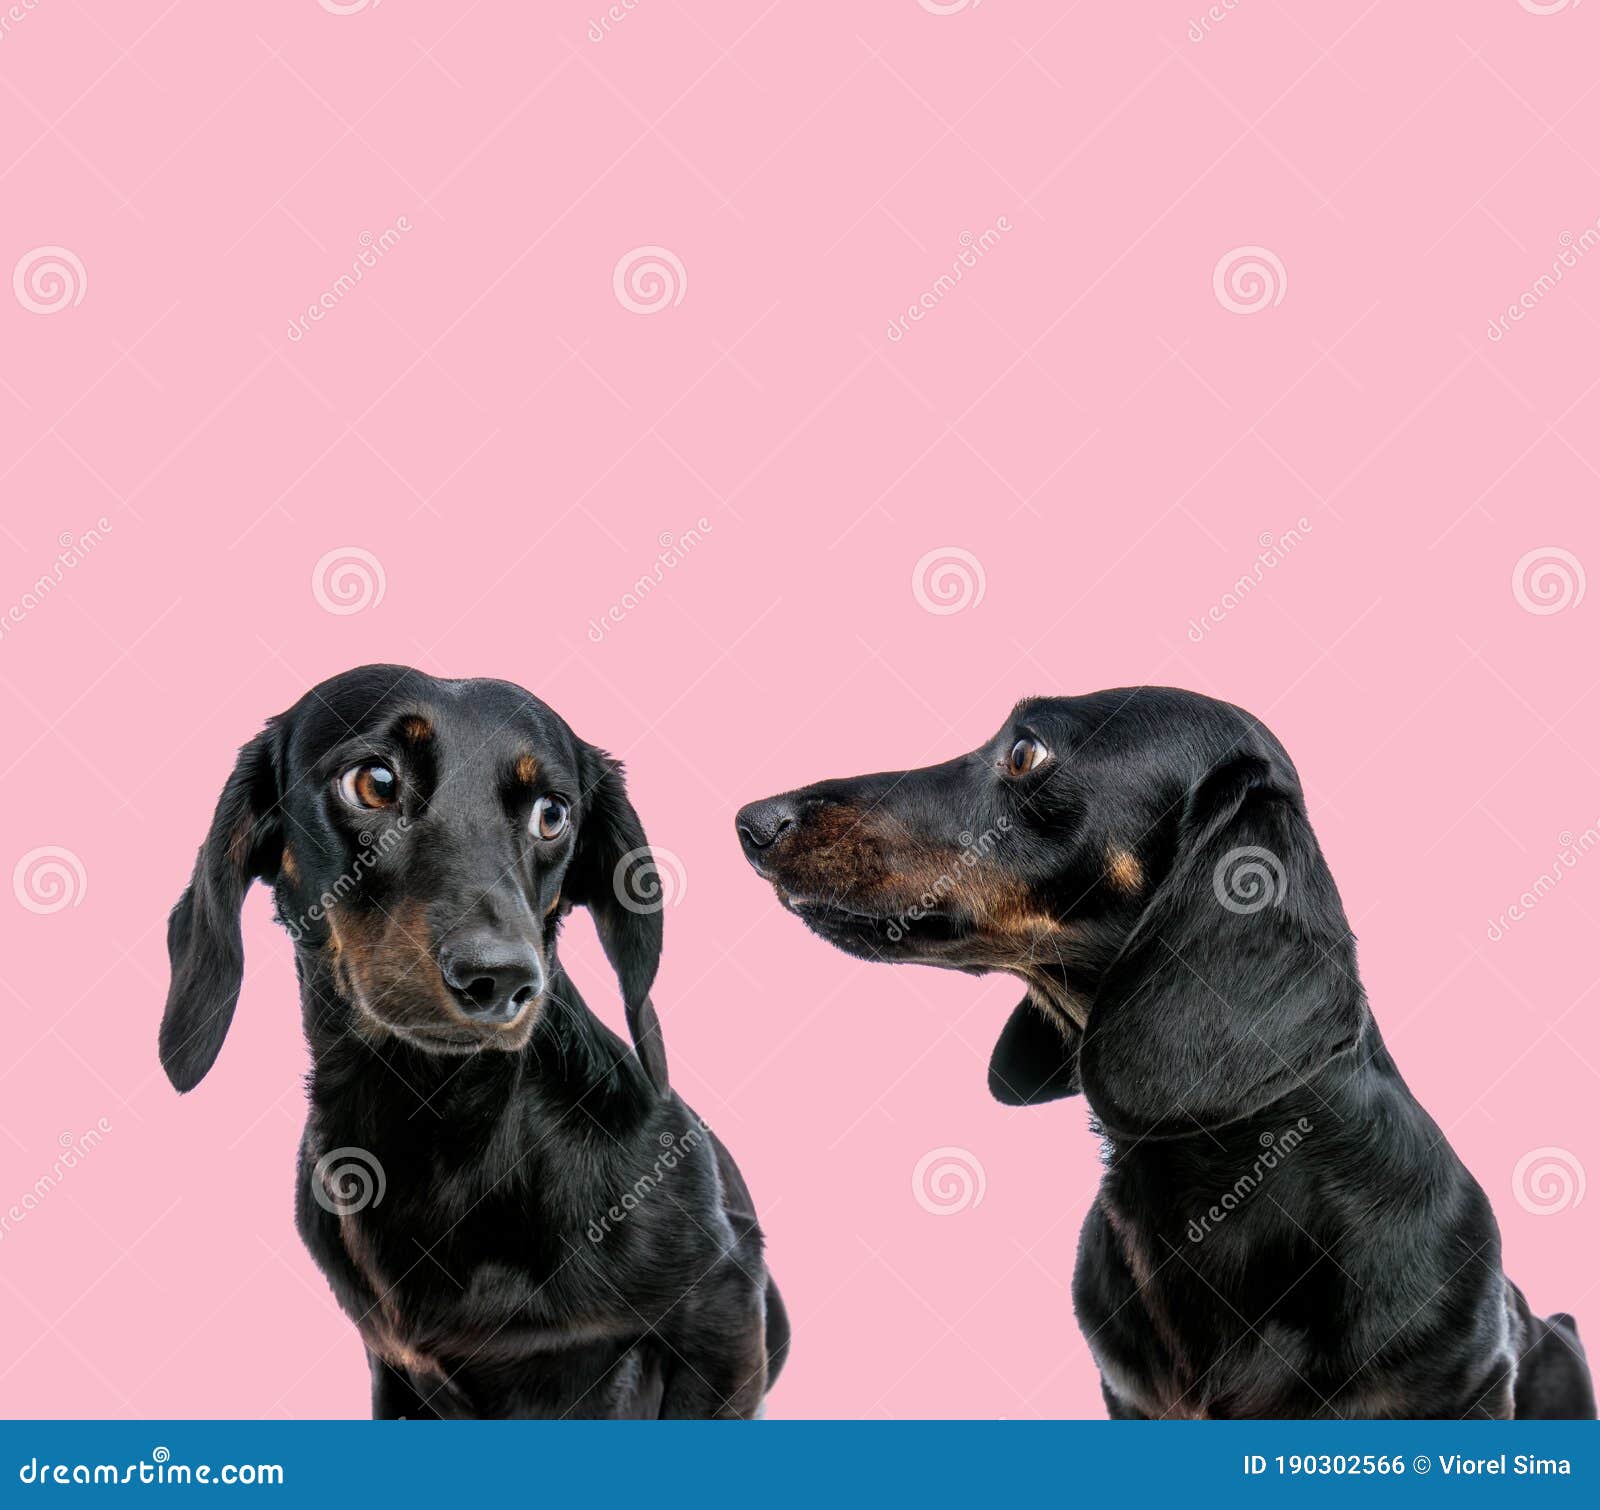 Chiếc áo phông hồng tươi trẻ cùng hai chú chó Teckel Dachshund đáng yêu và đồng đội của chúng, sẽ khiến bạn cảm thấy rất thú vị. Bạn có thể thấy sự đoàn kết cùng hàng loạt các ứng viên trong nhóm, đều đồng lòng và hy vọng sẽ cùng chiến thắng trong mùa giải này. Hãy đến và khám phá ngay nhé!